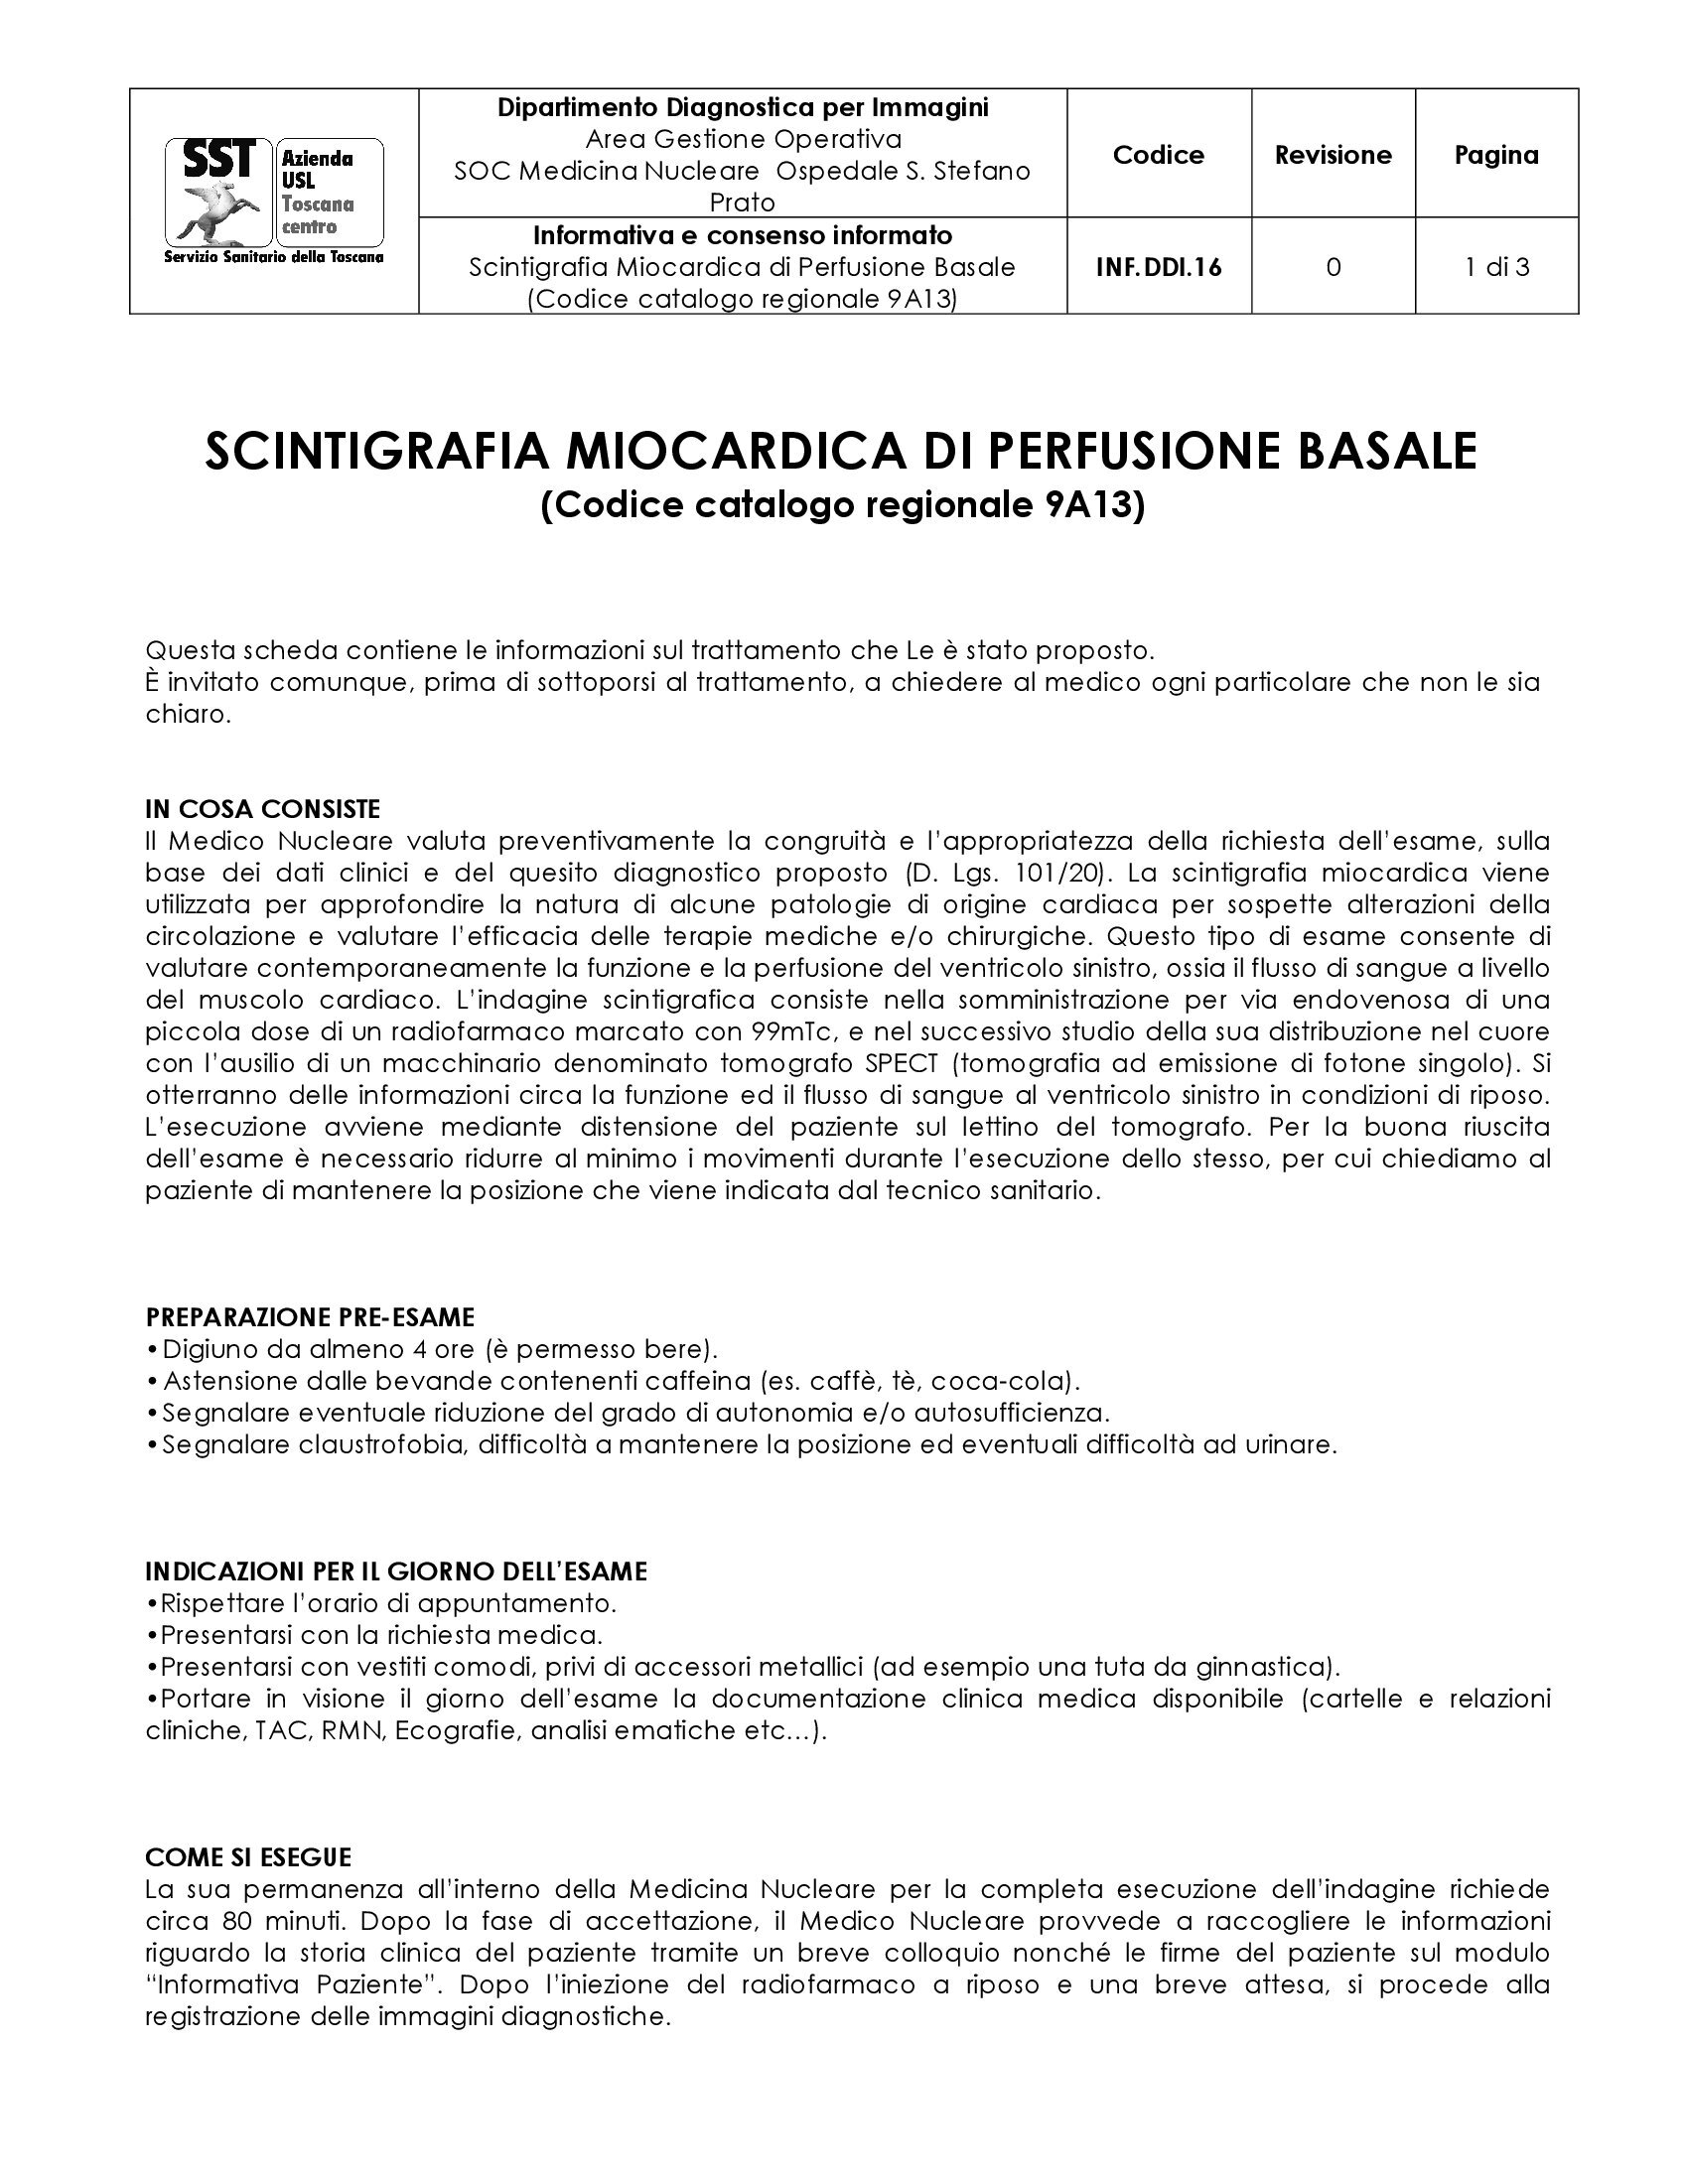 INF.DDI.16 Scintigrafia Miocardica di Perfusione Basale (Codice catalogo regionale 9A13)